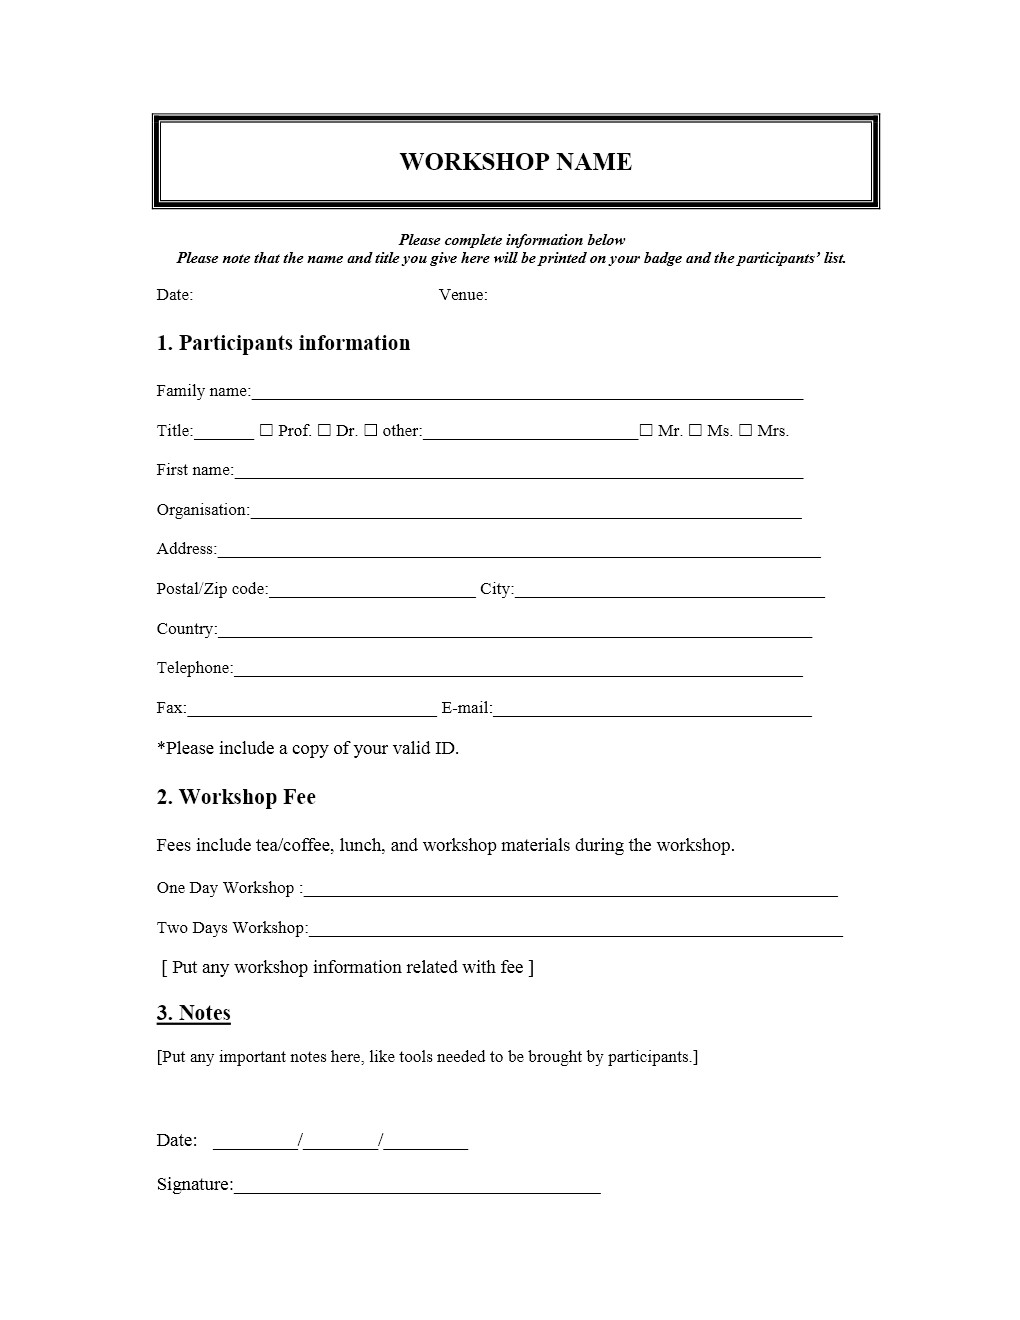 Registration form Template Free Workshop Registration form